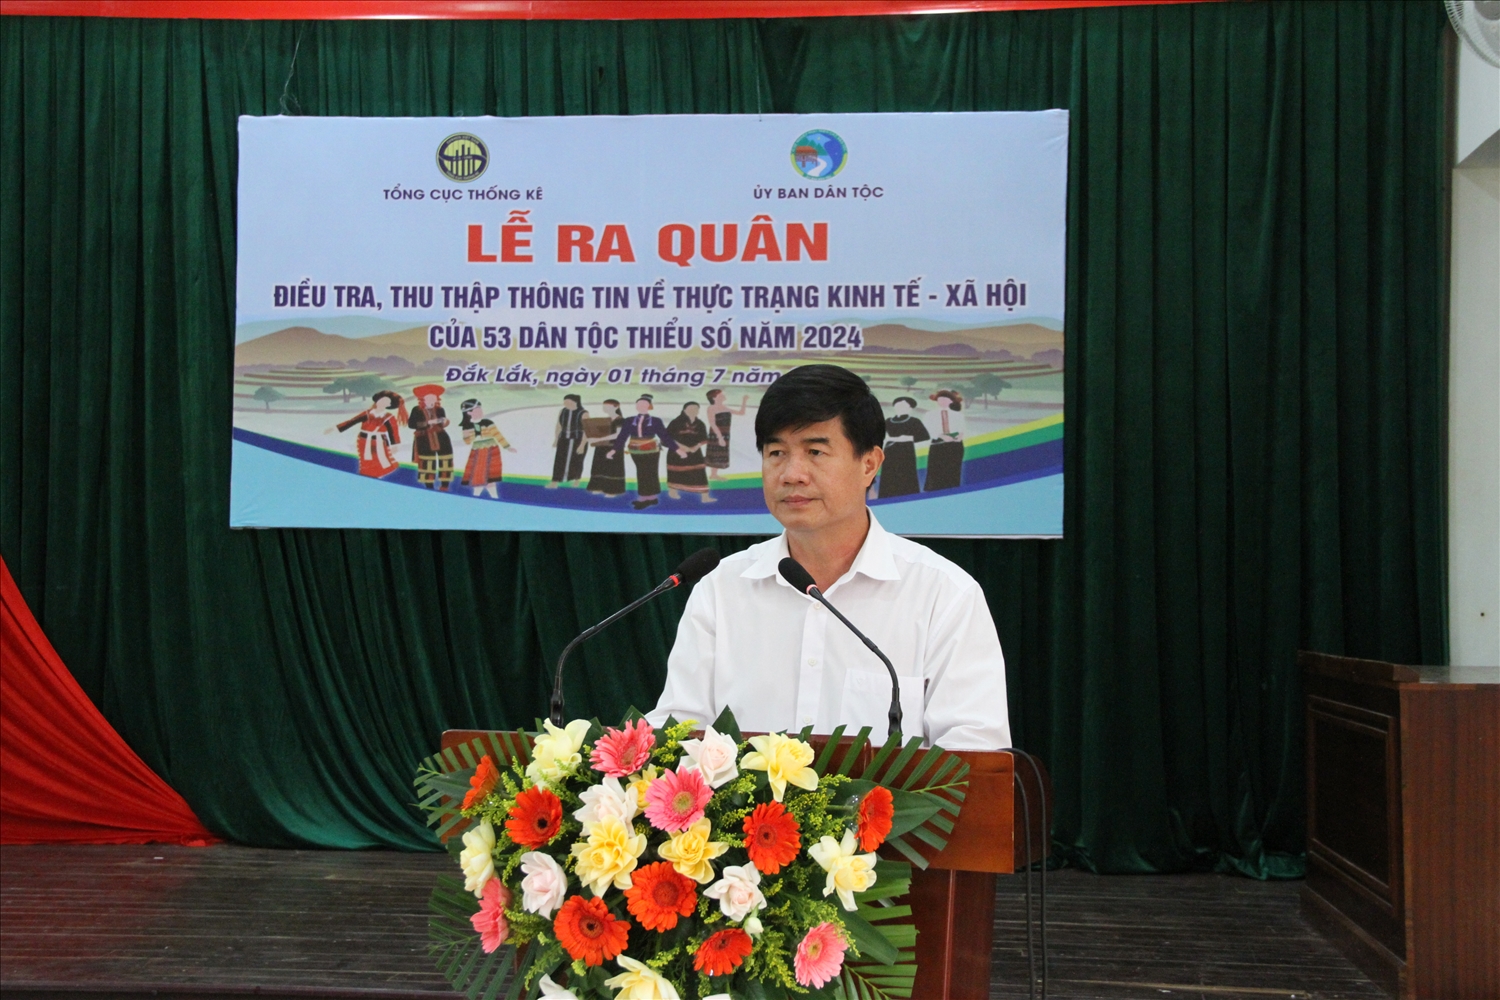 Phó chủ tịch UBND tỉnh Đắk Lắk Nguyễn Thiên Văn phát biểu tại lễ ra quân